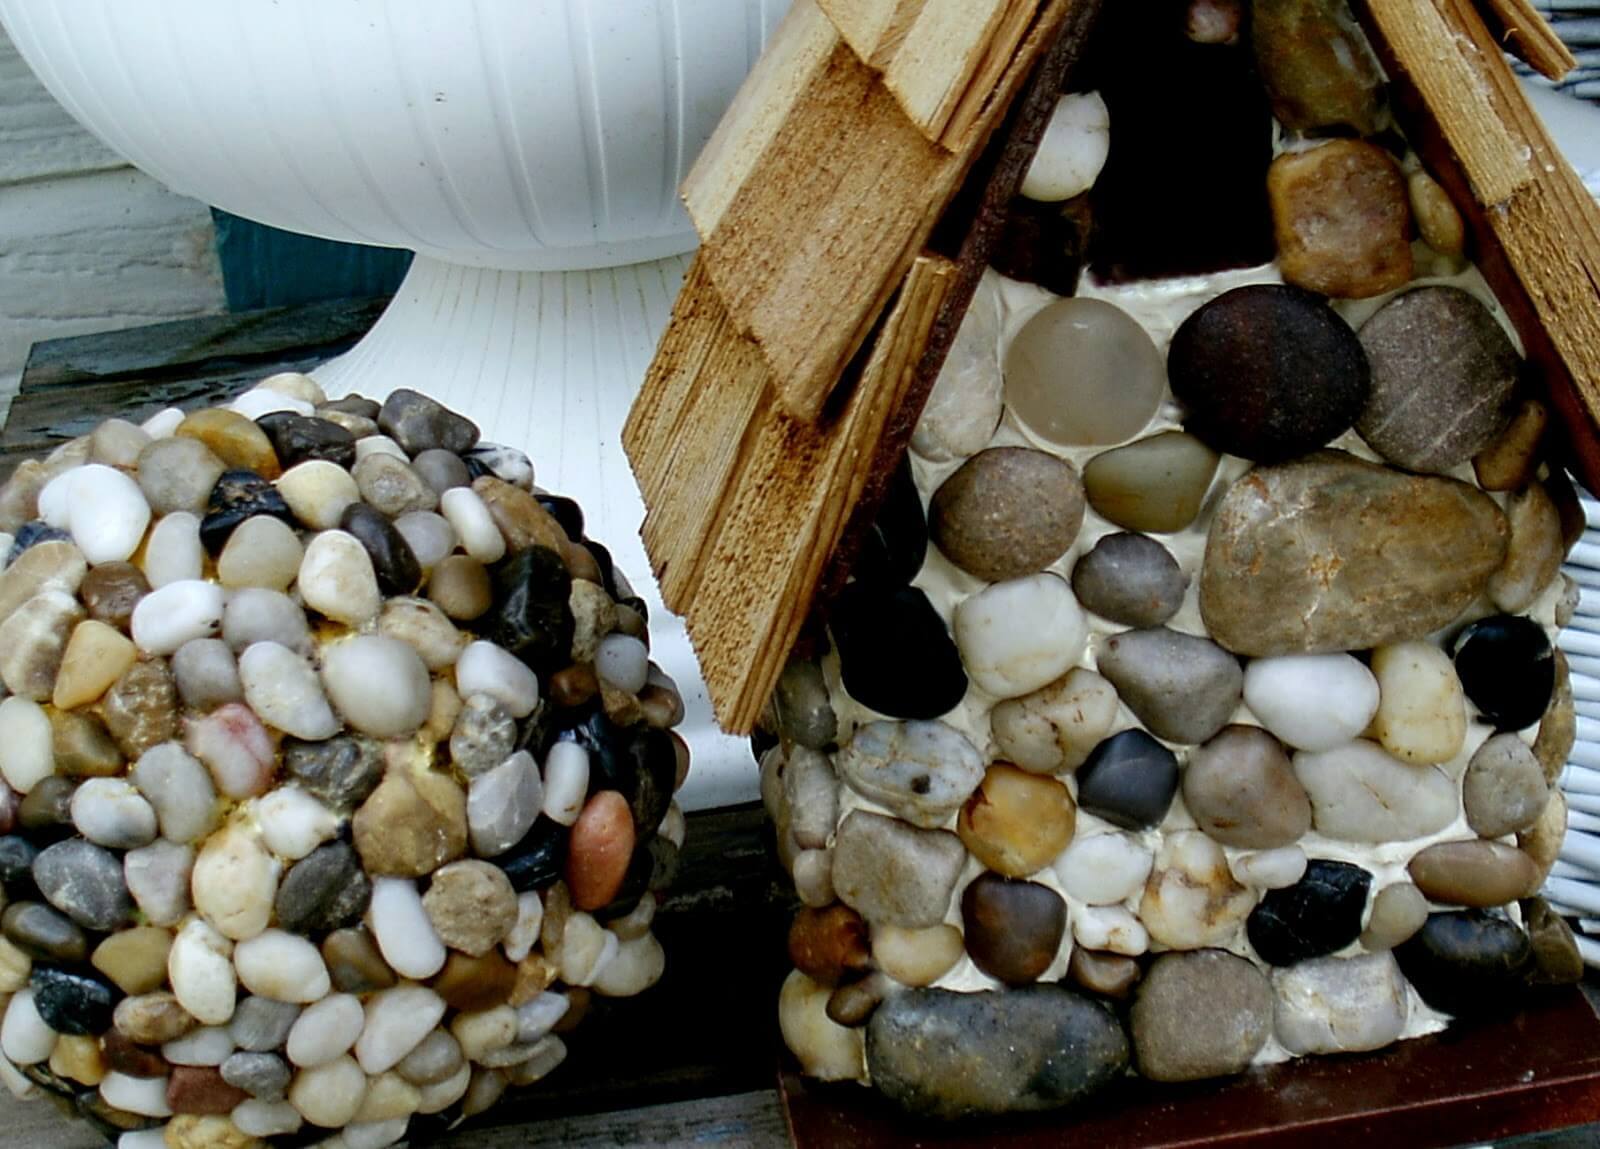 Cover a Ball and Birdhouse in Pebbles | DIY Garden Ball Ideas